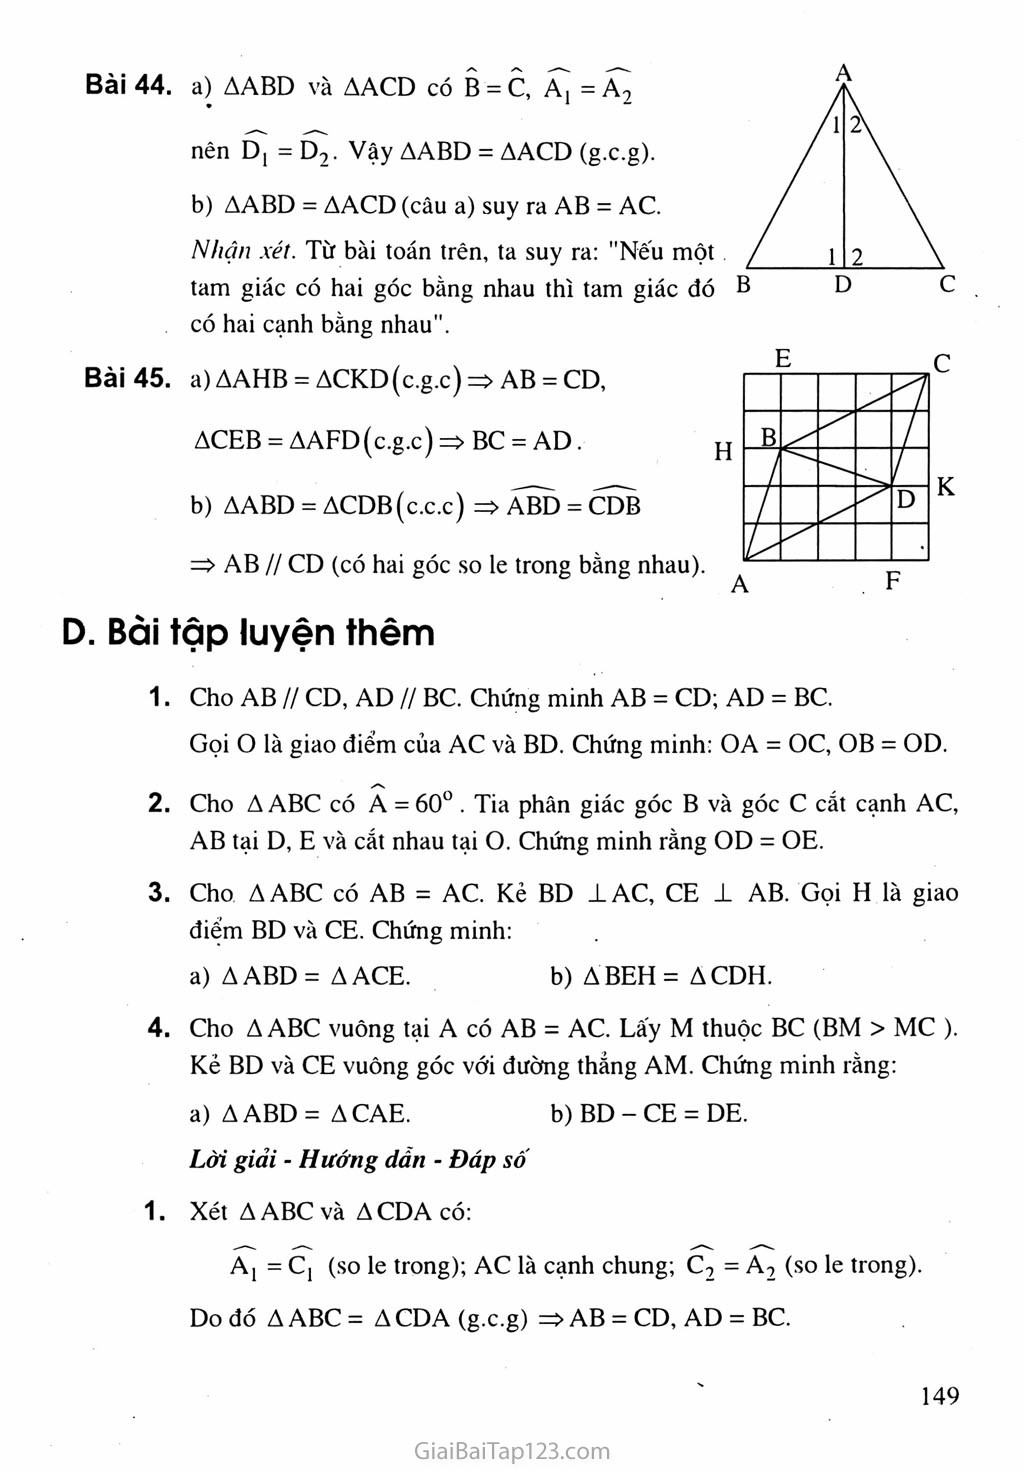 Bài 5. Trường hợp bằng nhau thứ ba của tam giác: góc - cạnh - góc (g.c.g) trang 6